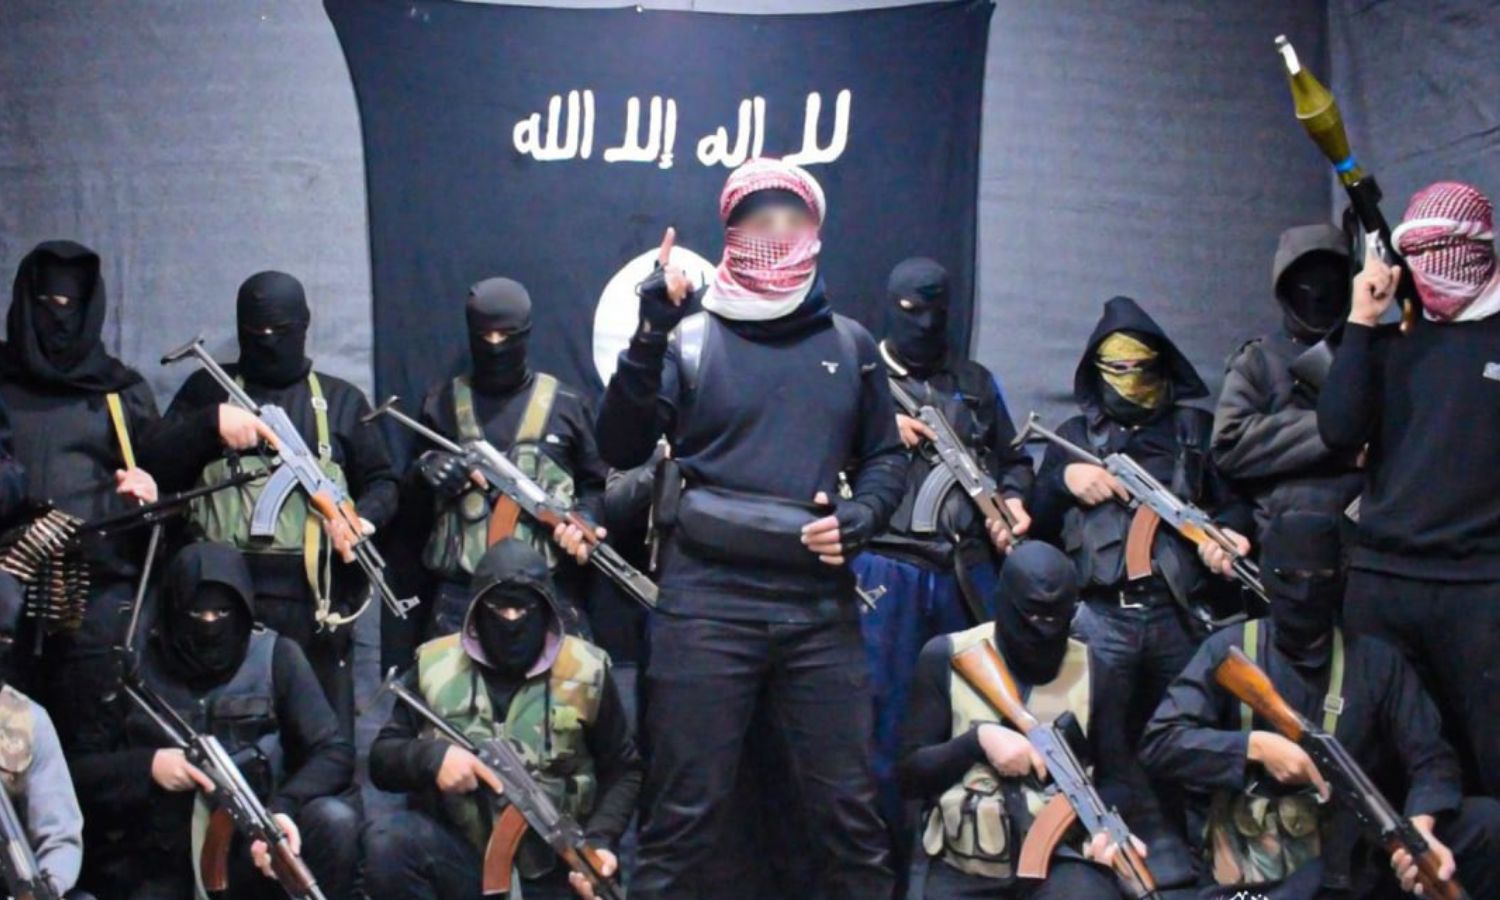 مقاتلو تنظيم "الدولة الإسلامية" يبايعون الزعيم الجديد "أبو الحسين القرشي" في سوريا- تشرين الثاني 2022 (معرف التنظيم تلجرام)